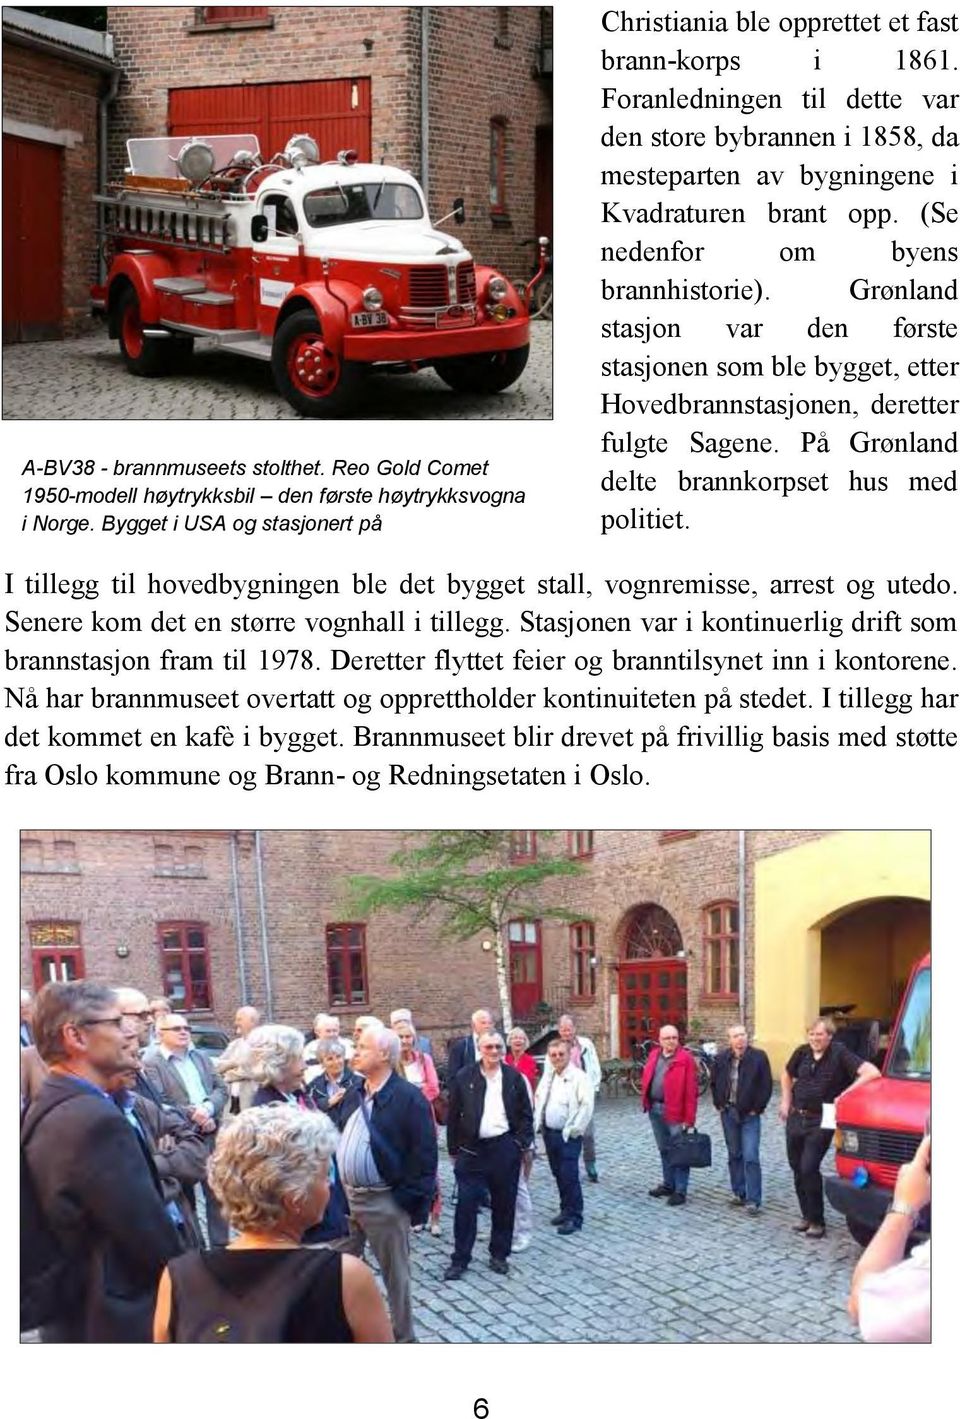 (Se nedenfor om byens brannhistorie). Grønland stasjon var den første stasjonen som ble bygget, etter Hovedbrannstasjonen, deretter fulgte Sagene. På Grønland delte brannkorpset hus med politiet.